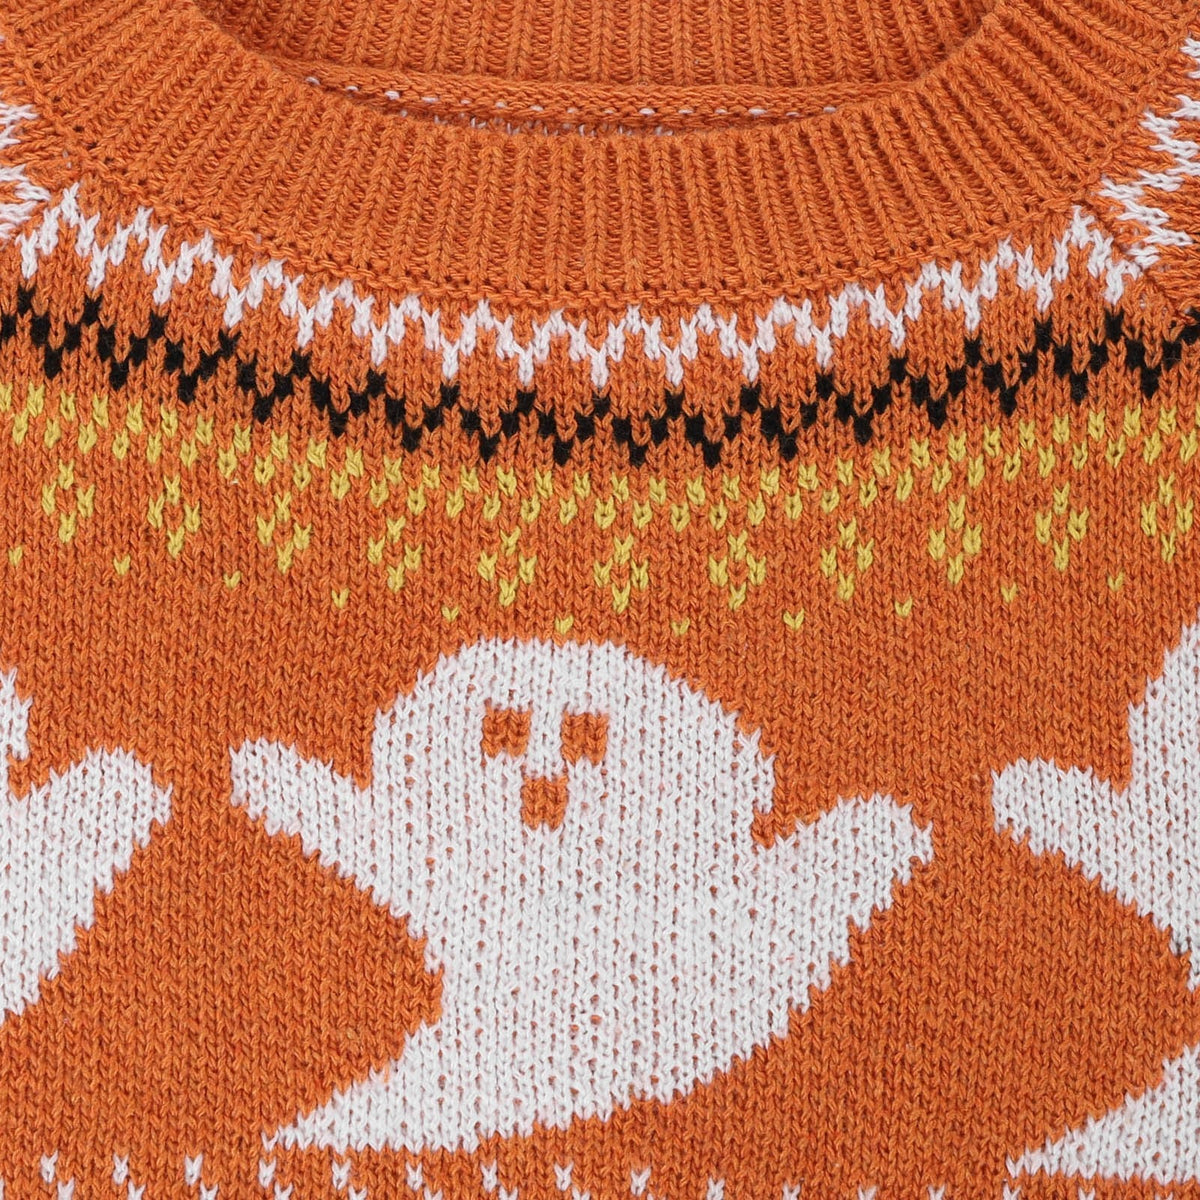 Rags n Rituals 'Casper' Orange Ghost Sweater at $37.99 USD